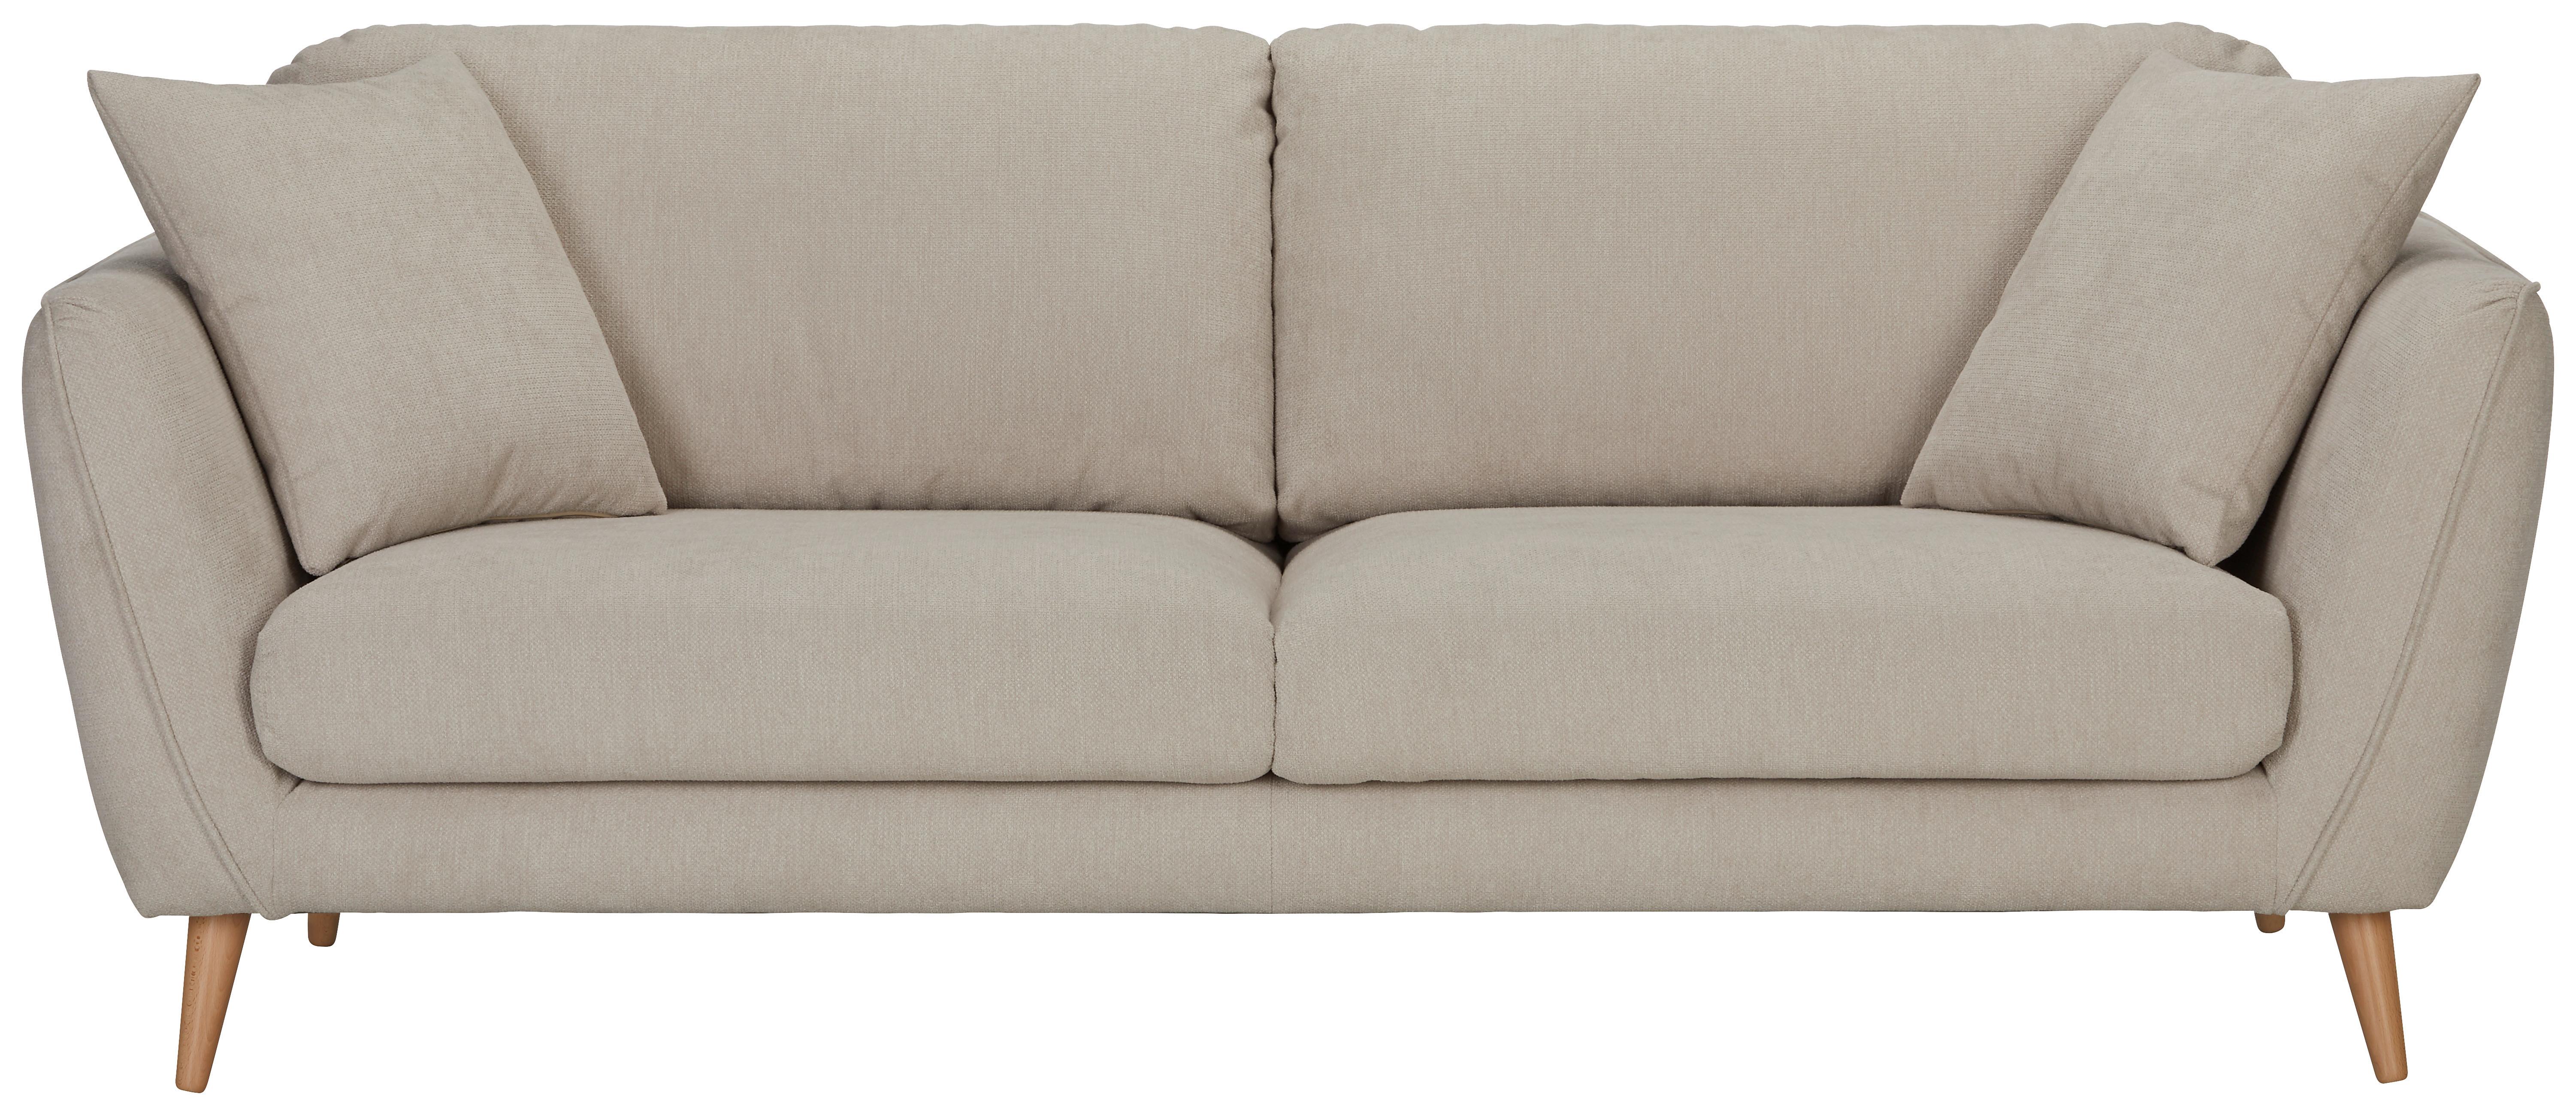 Dreisitzer-Sofa in Beige - Beige/Naturfarben, Konventionell, Textil (215cm) - Zandiara